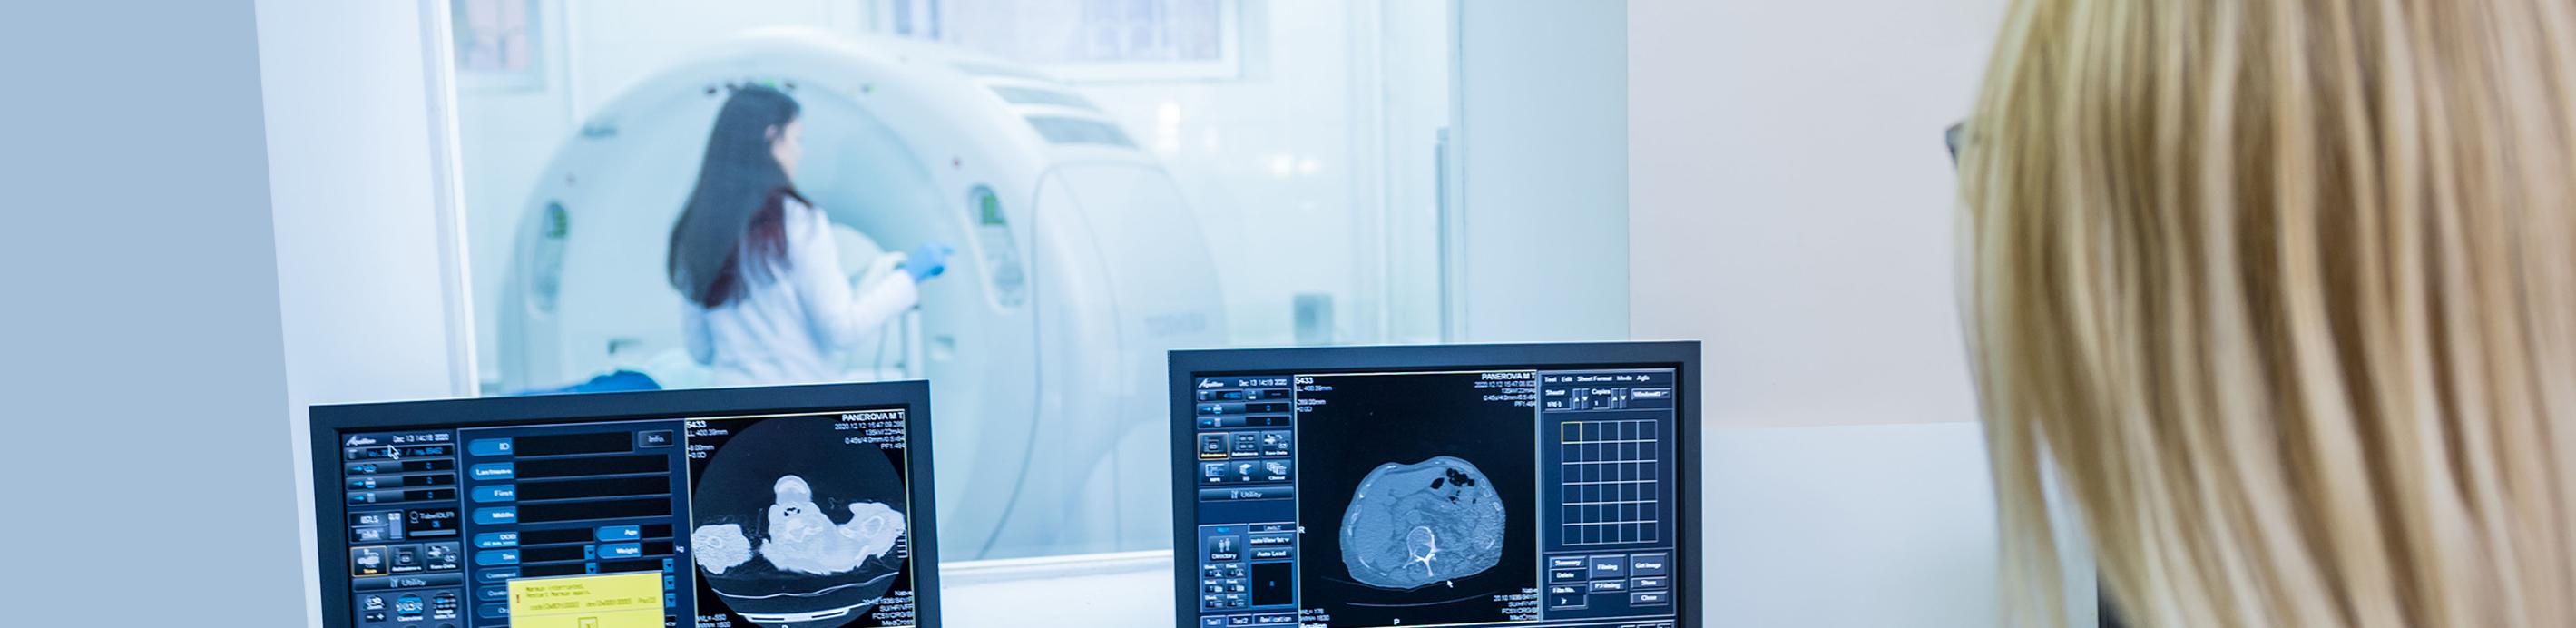 Égalité d’accès aux soins de radiologie 